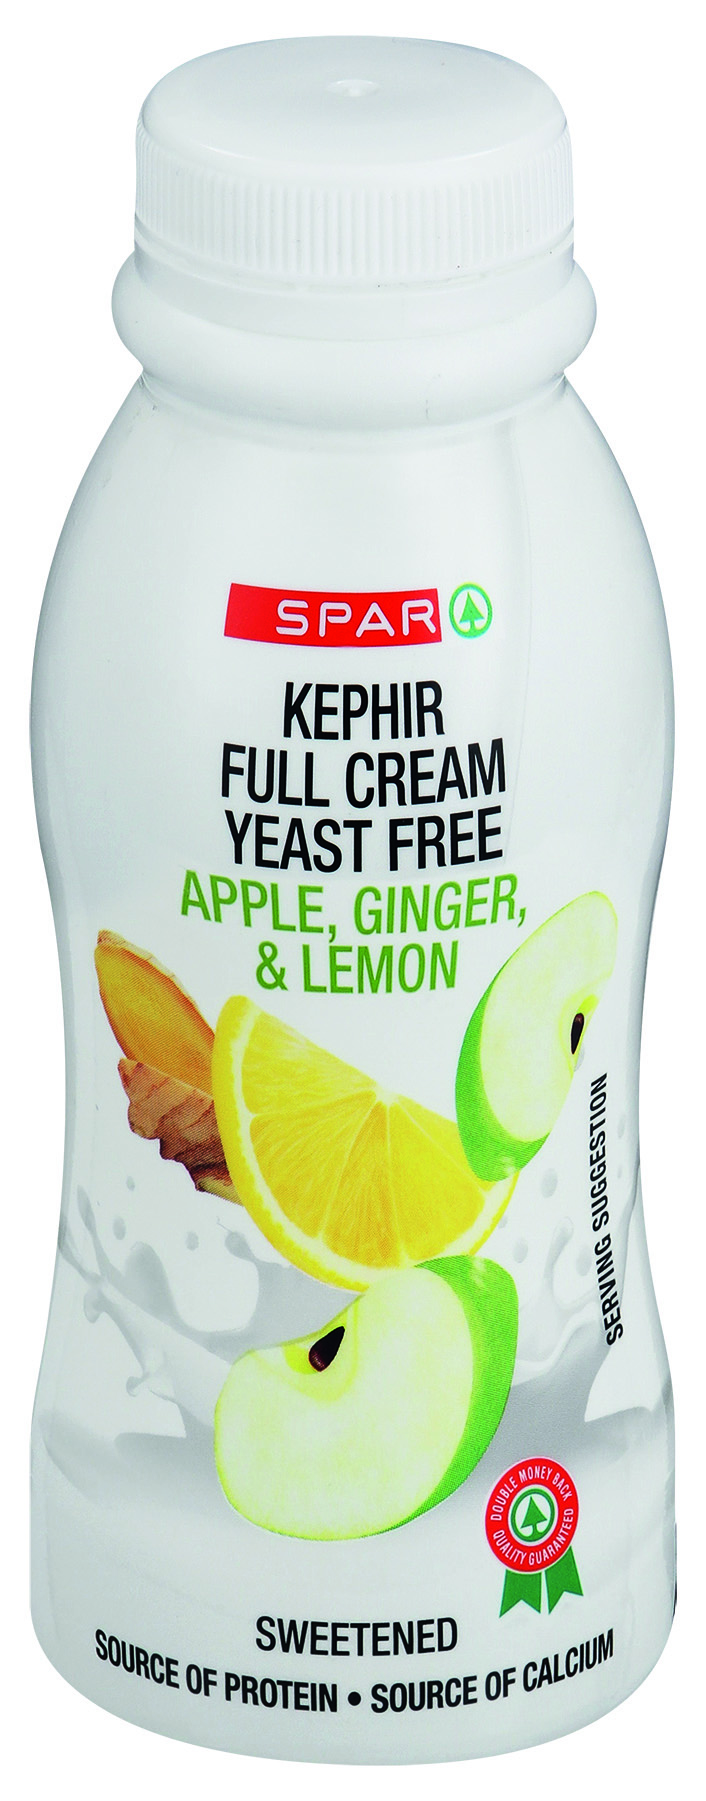 kephir apple ginger & lemon